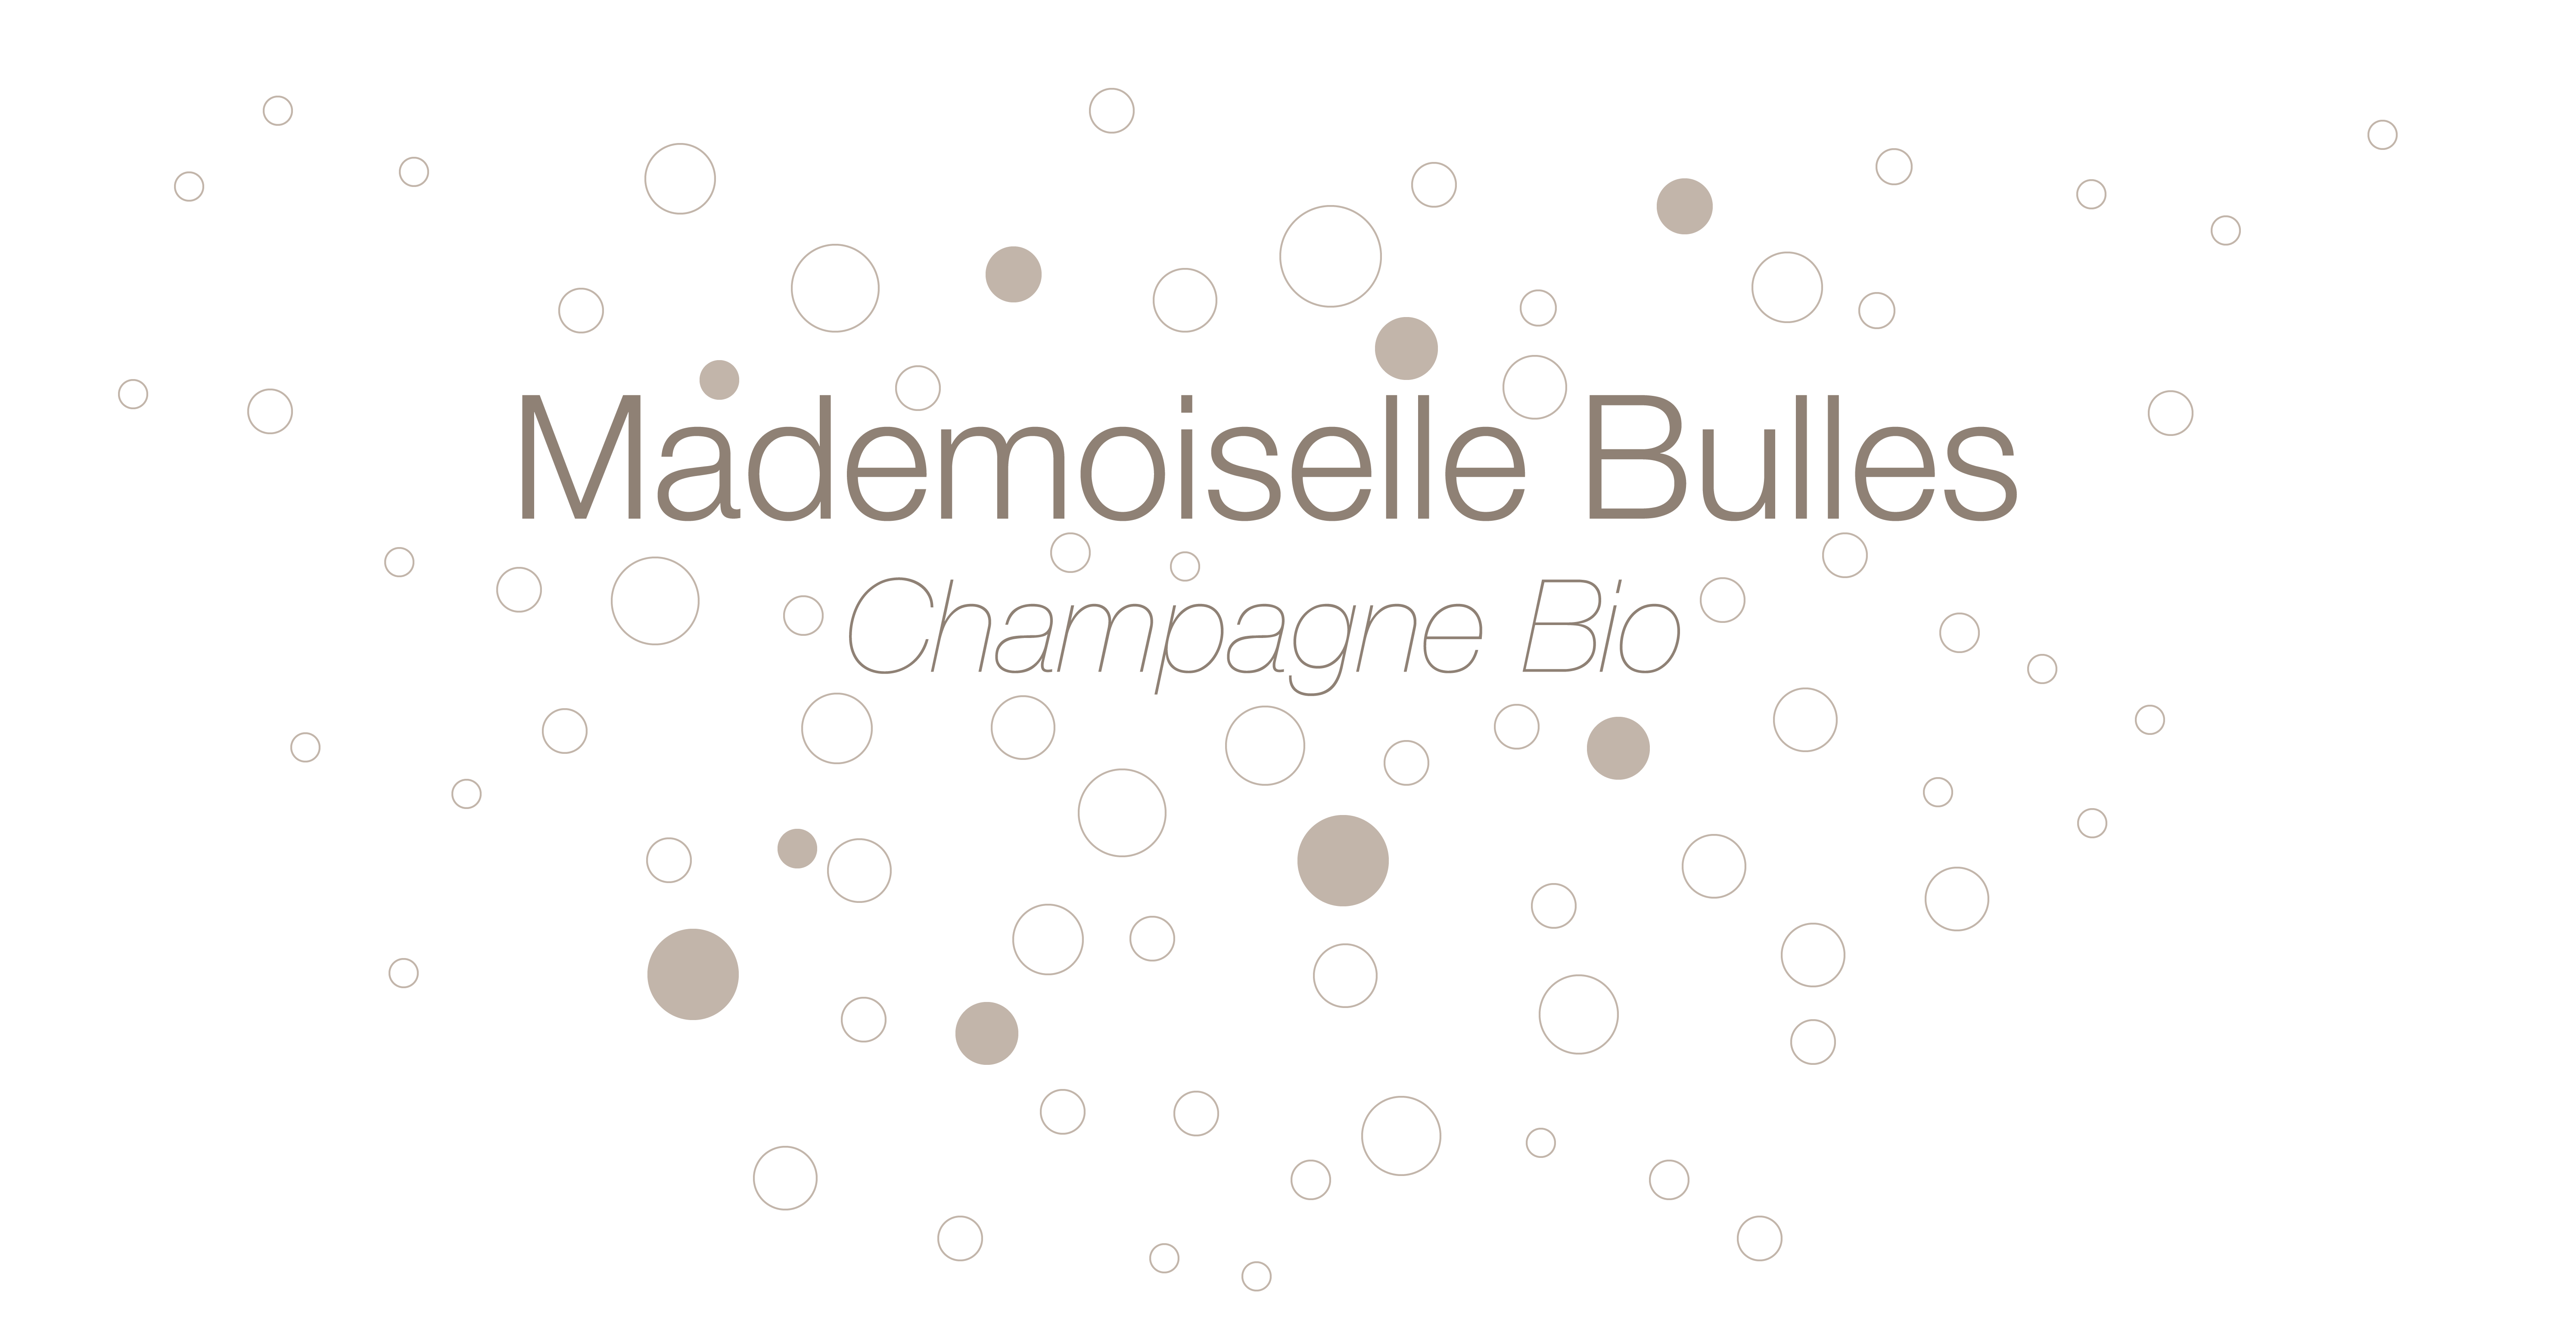 Mademoiselle Bulles